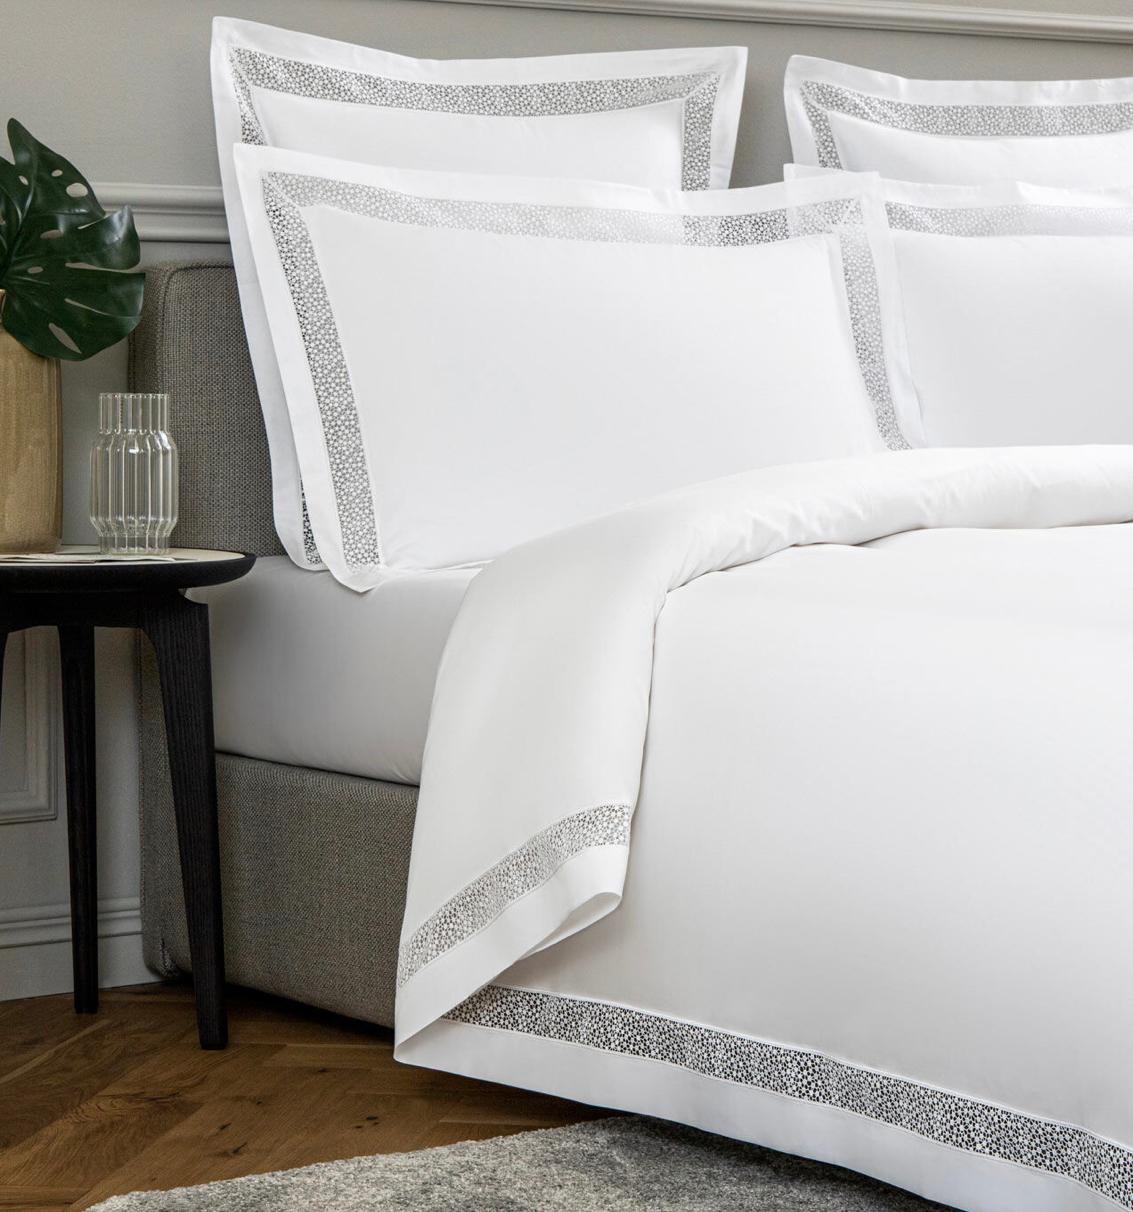 Der Bettbezug Forever Lace ist ein elegantes Statement in minimalistischem, romantischem Design. Er besteht aus warmem, seidigem Baumwollsatin mit eingelegter zottelgrüner Makramee-Spitze an den Rändern. Die subtile und zarte Spitzenstickerei